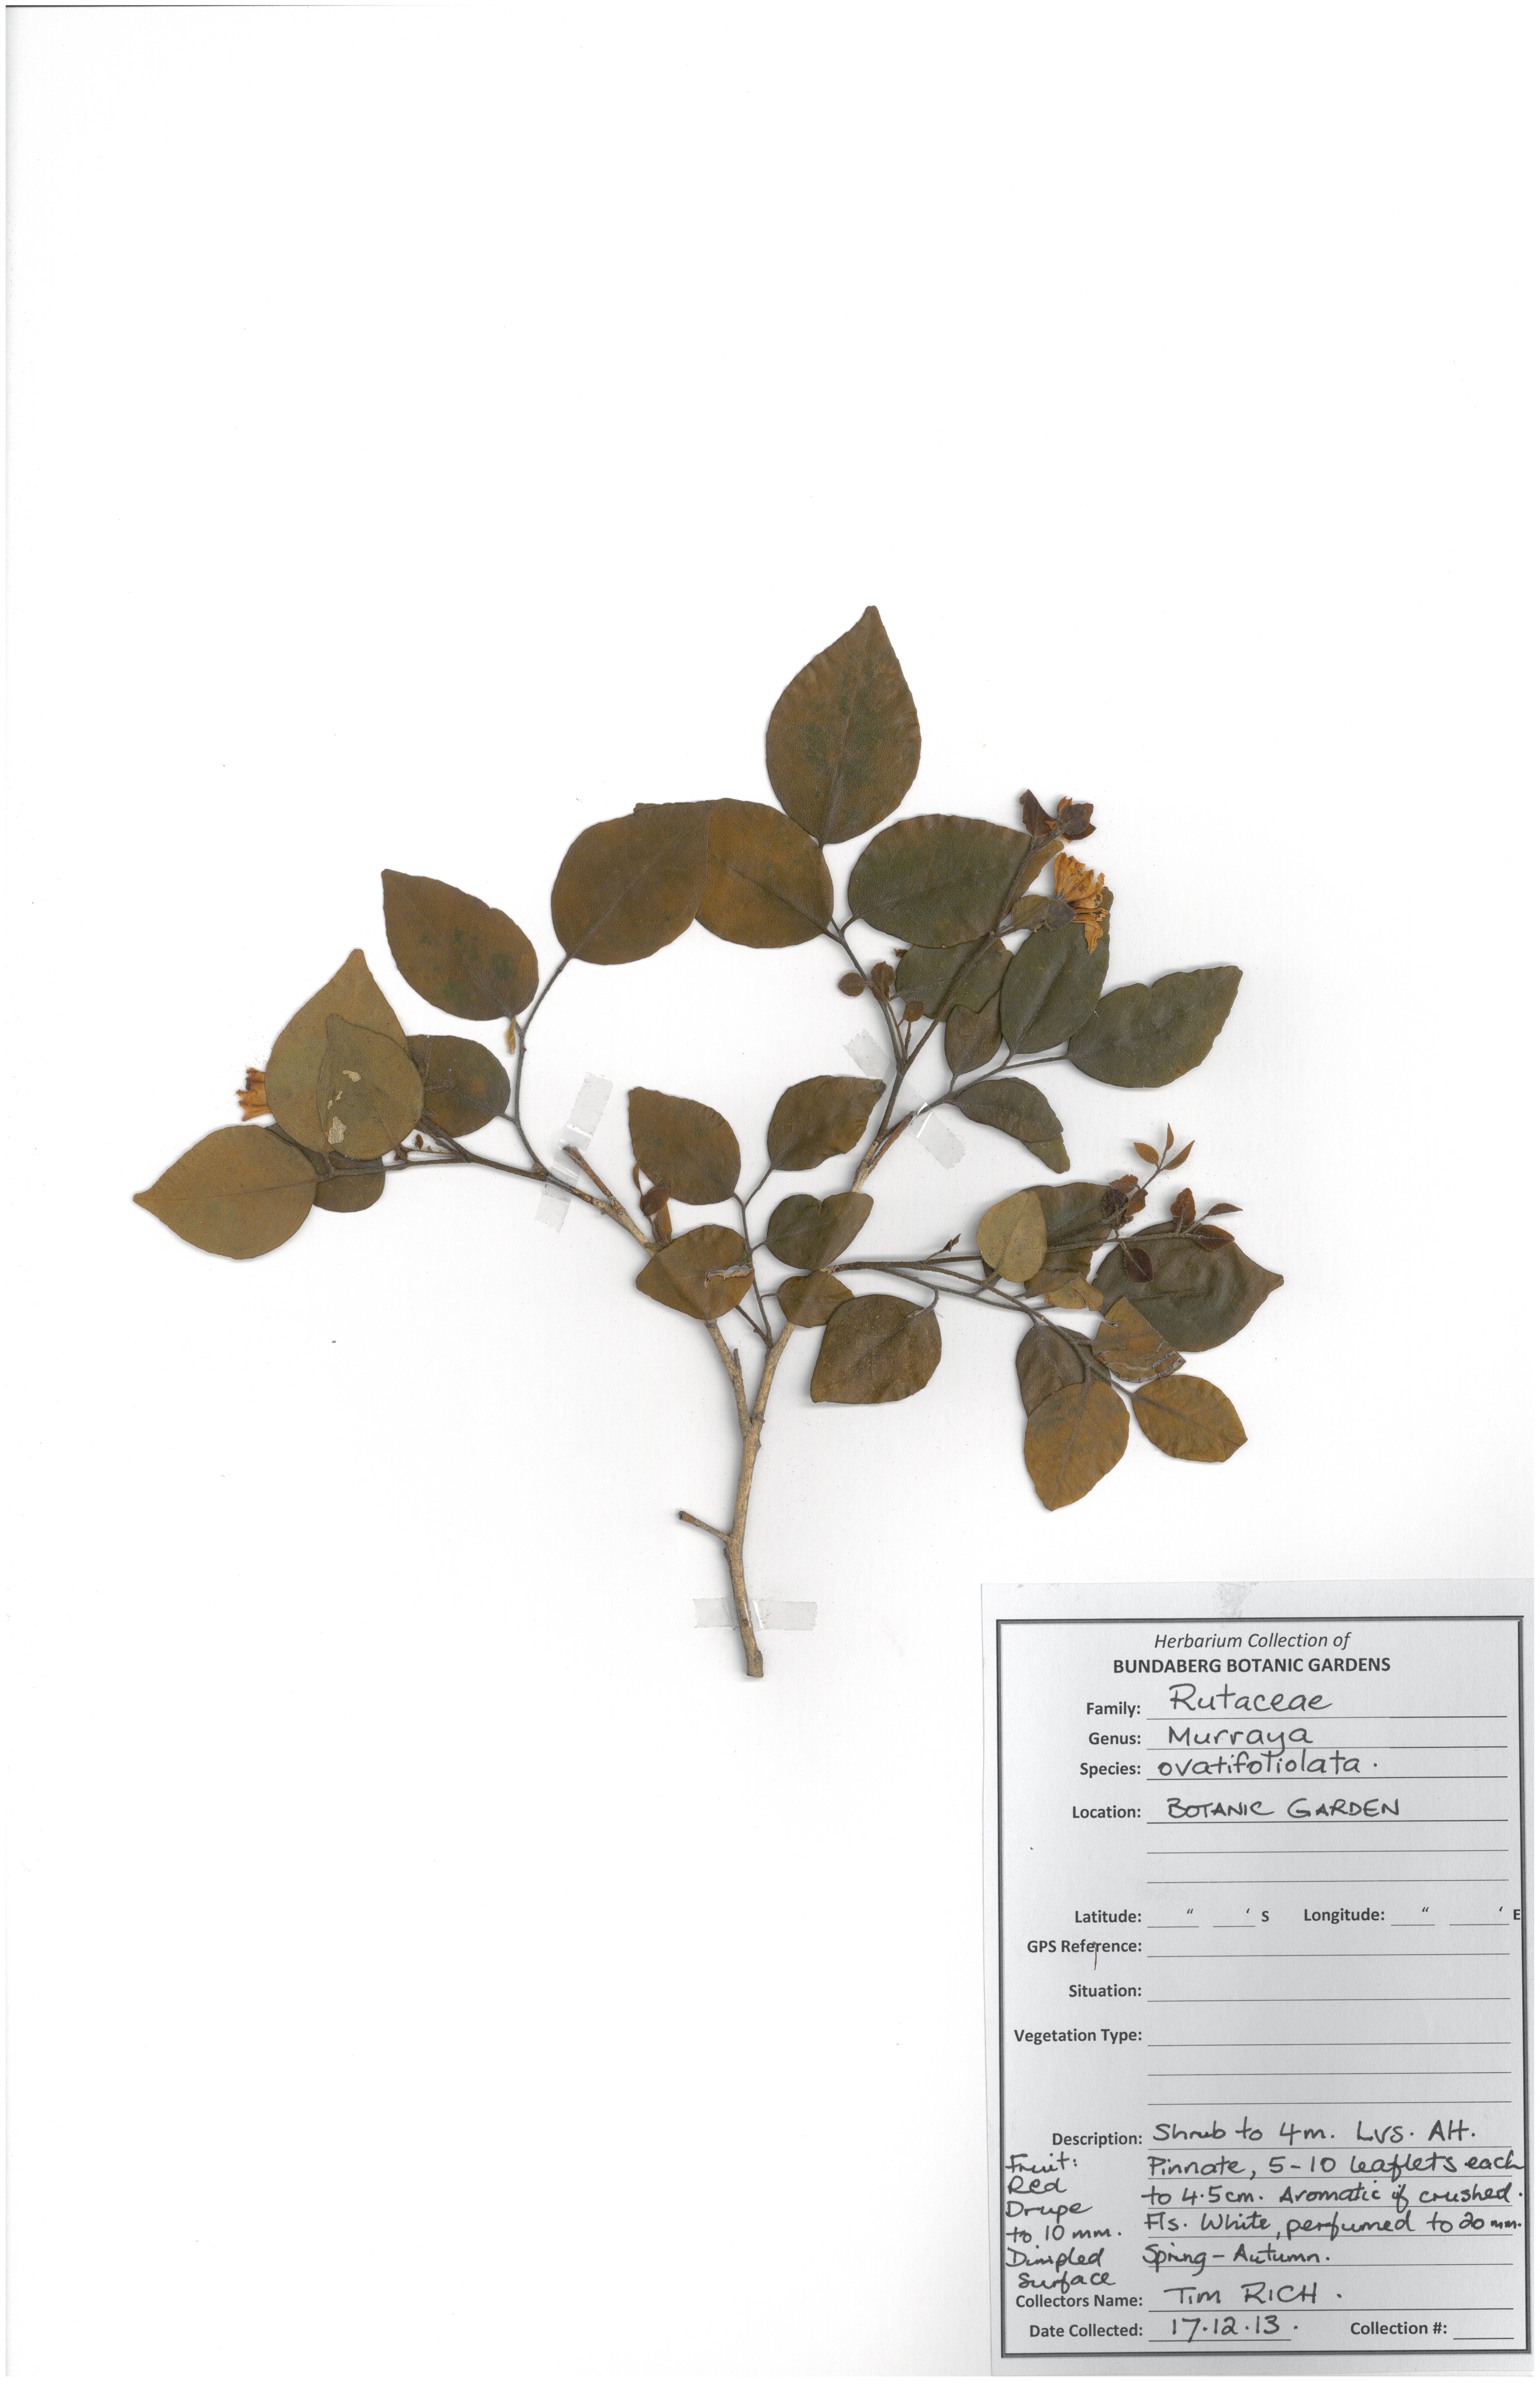 Rutaceae murraya ovatifoliolata